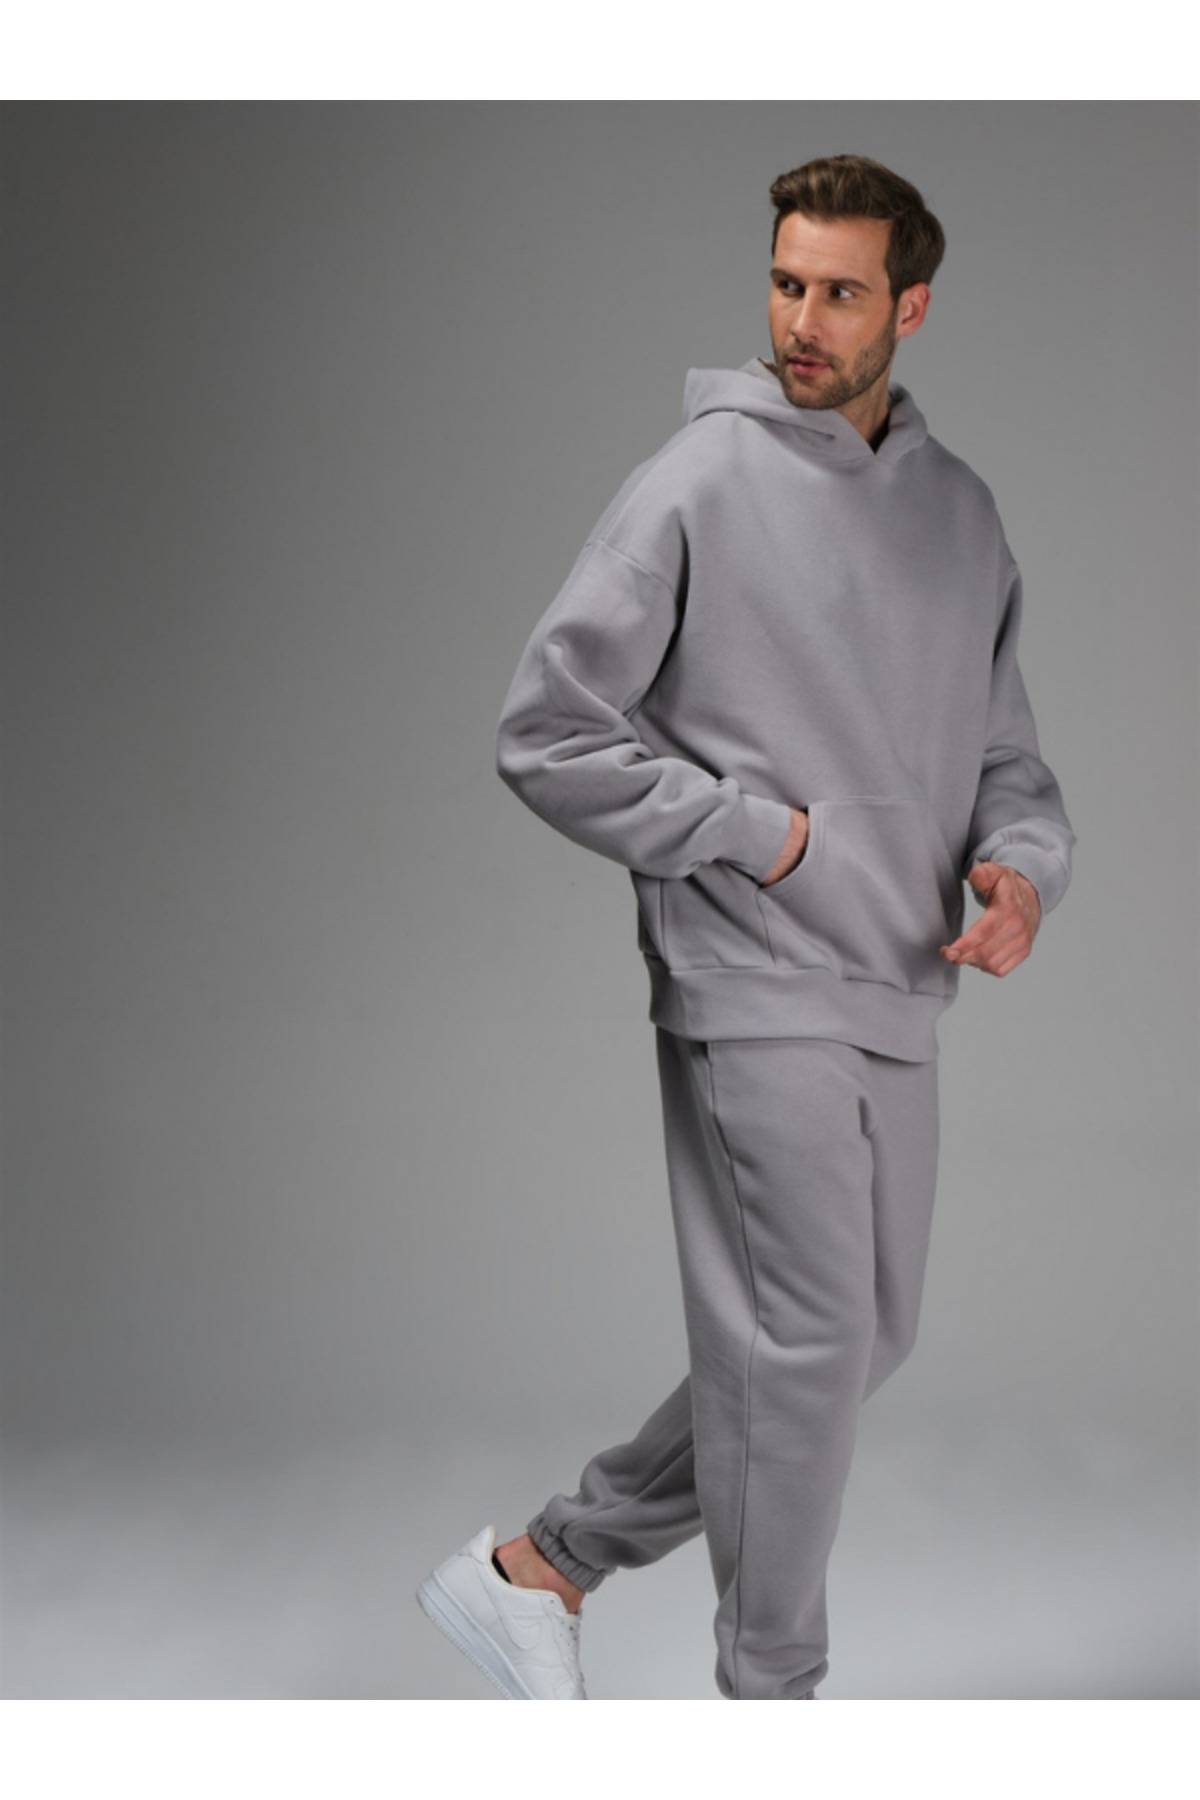 ست لباس ورزشی مردانه سرپوش خاکستری با پاهای الاستیک 3 نخی